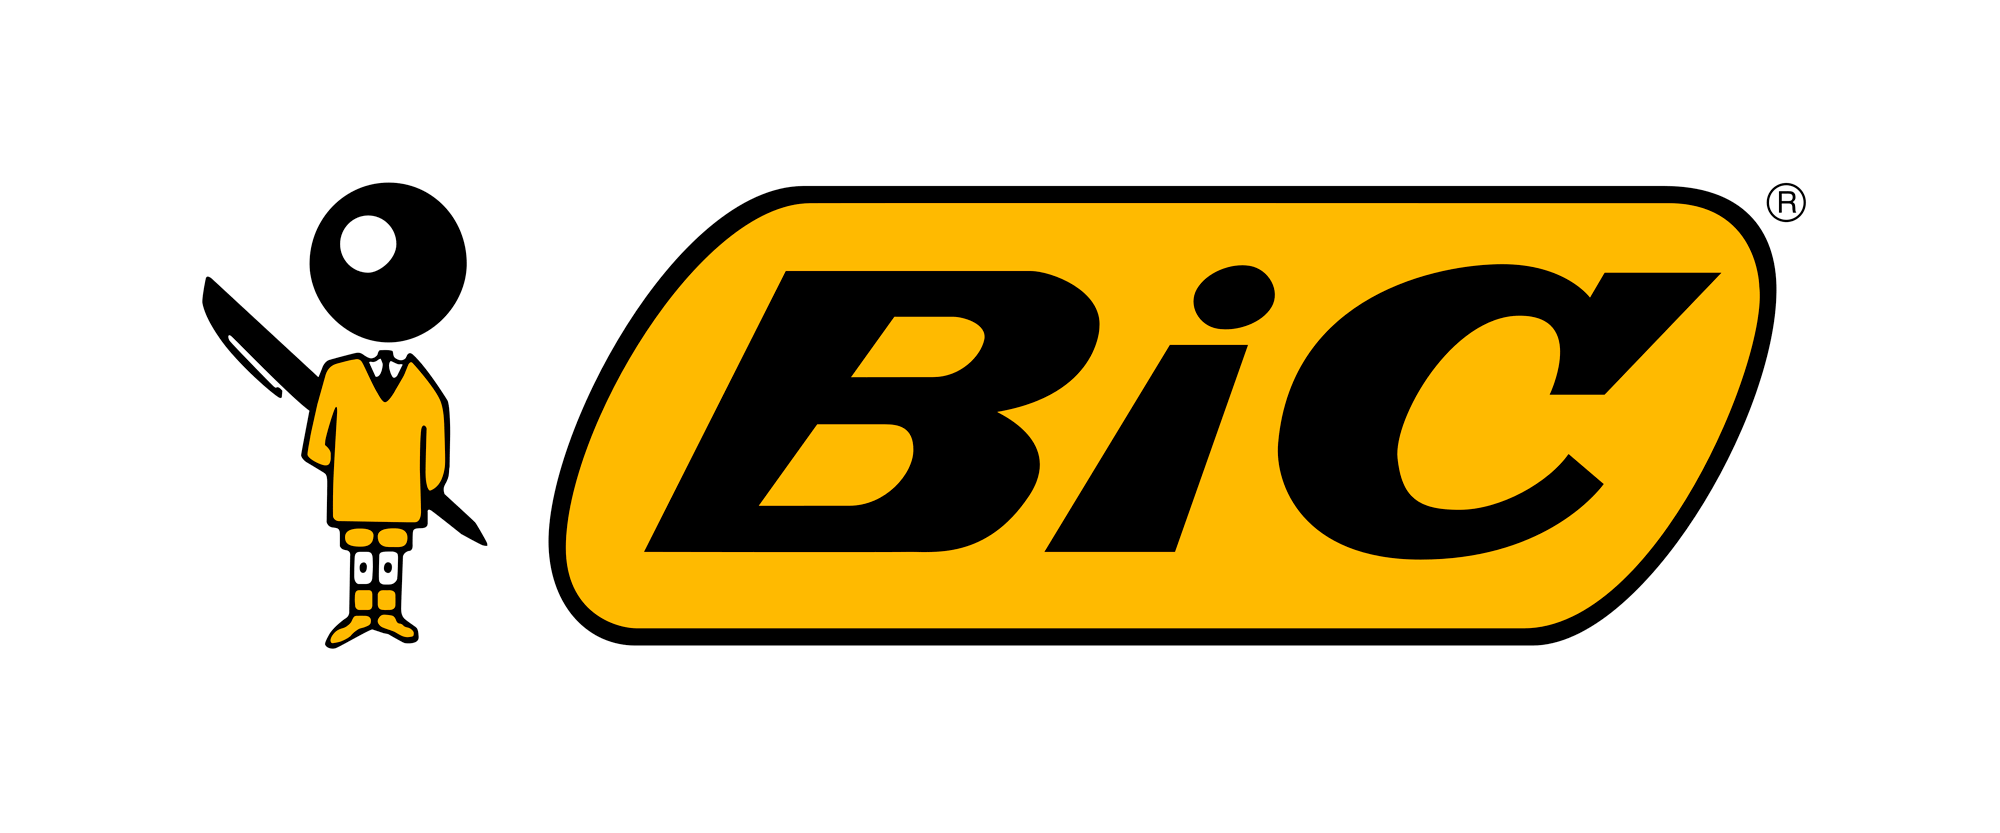 Logo-Bic